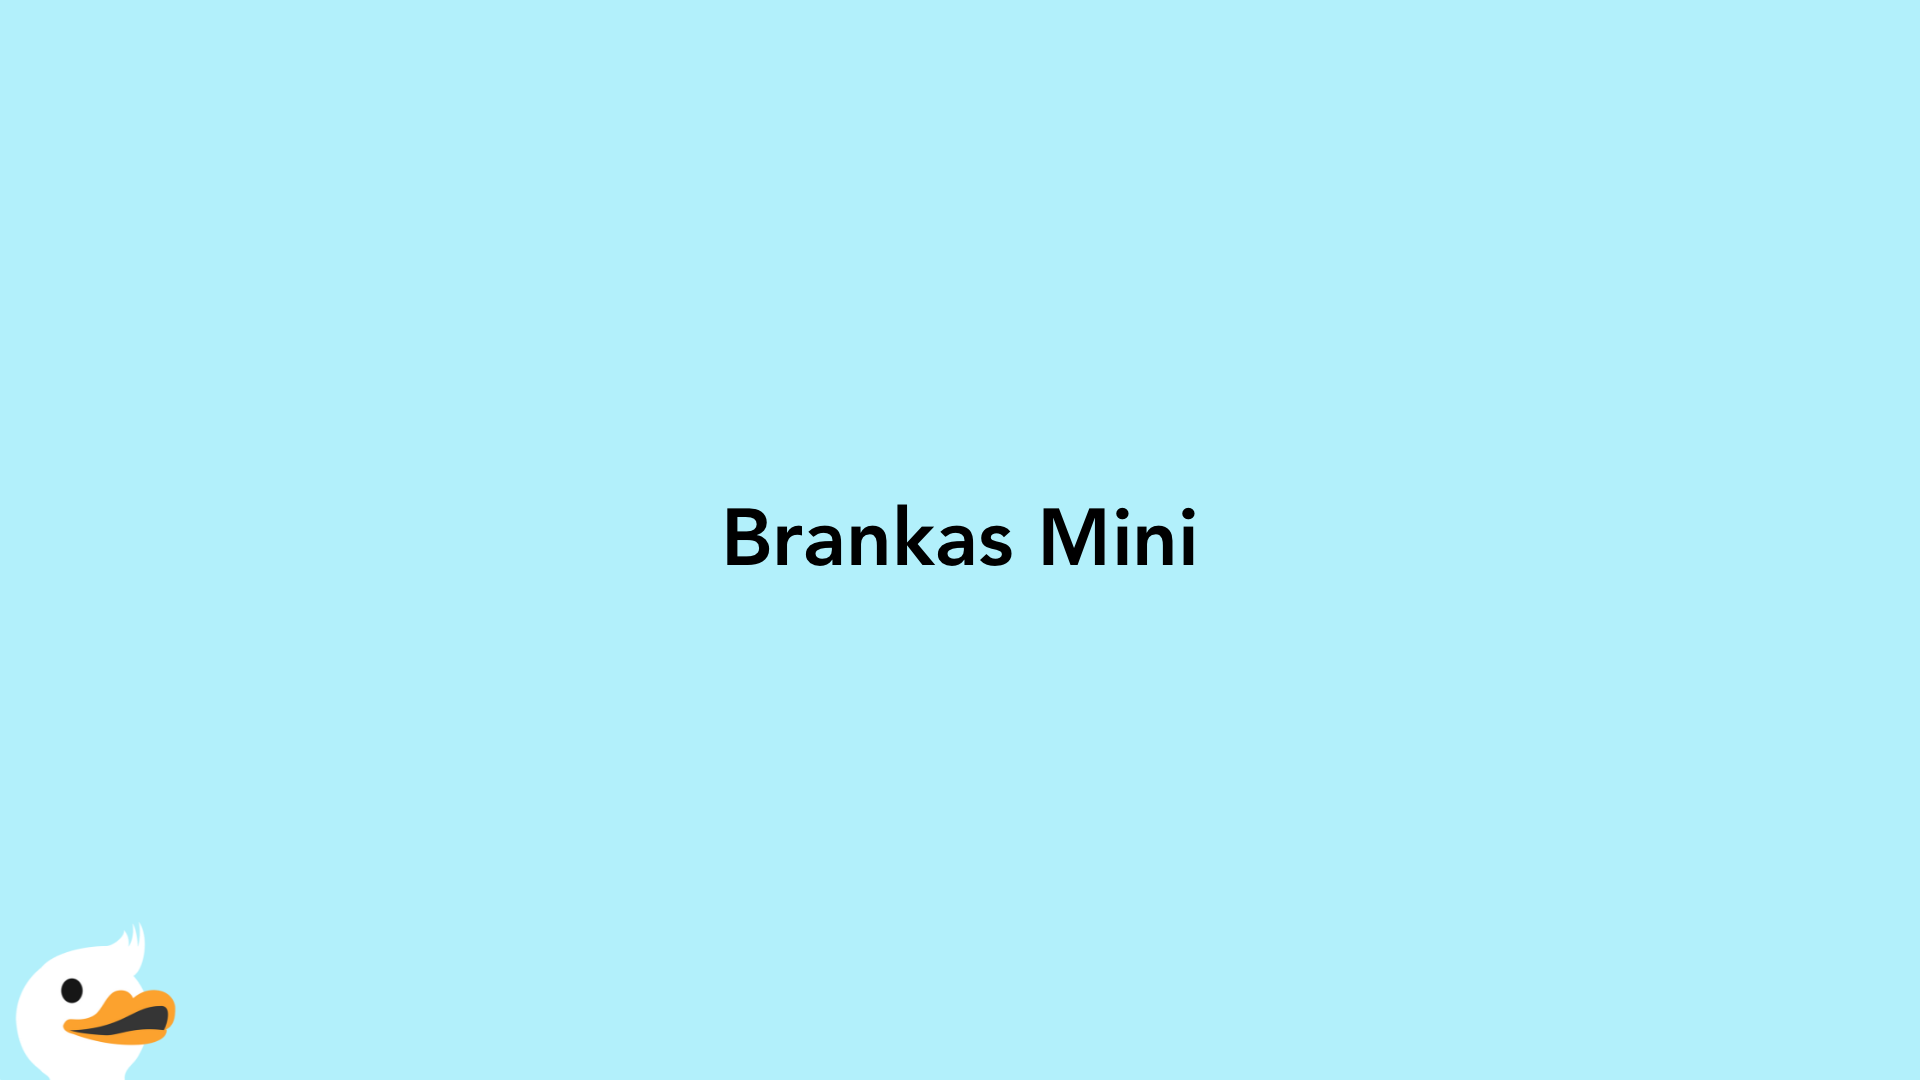 Brankas Mini